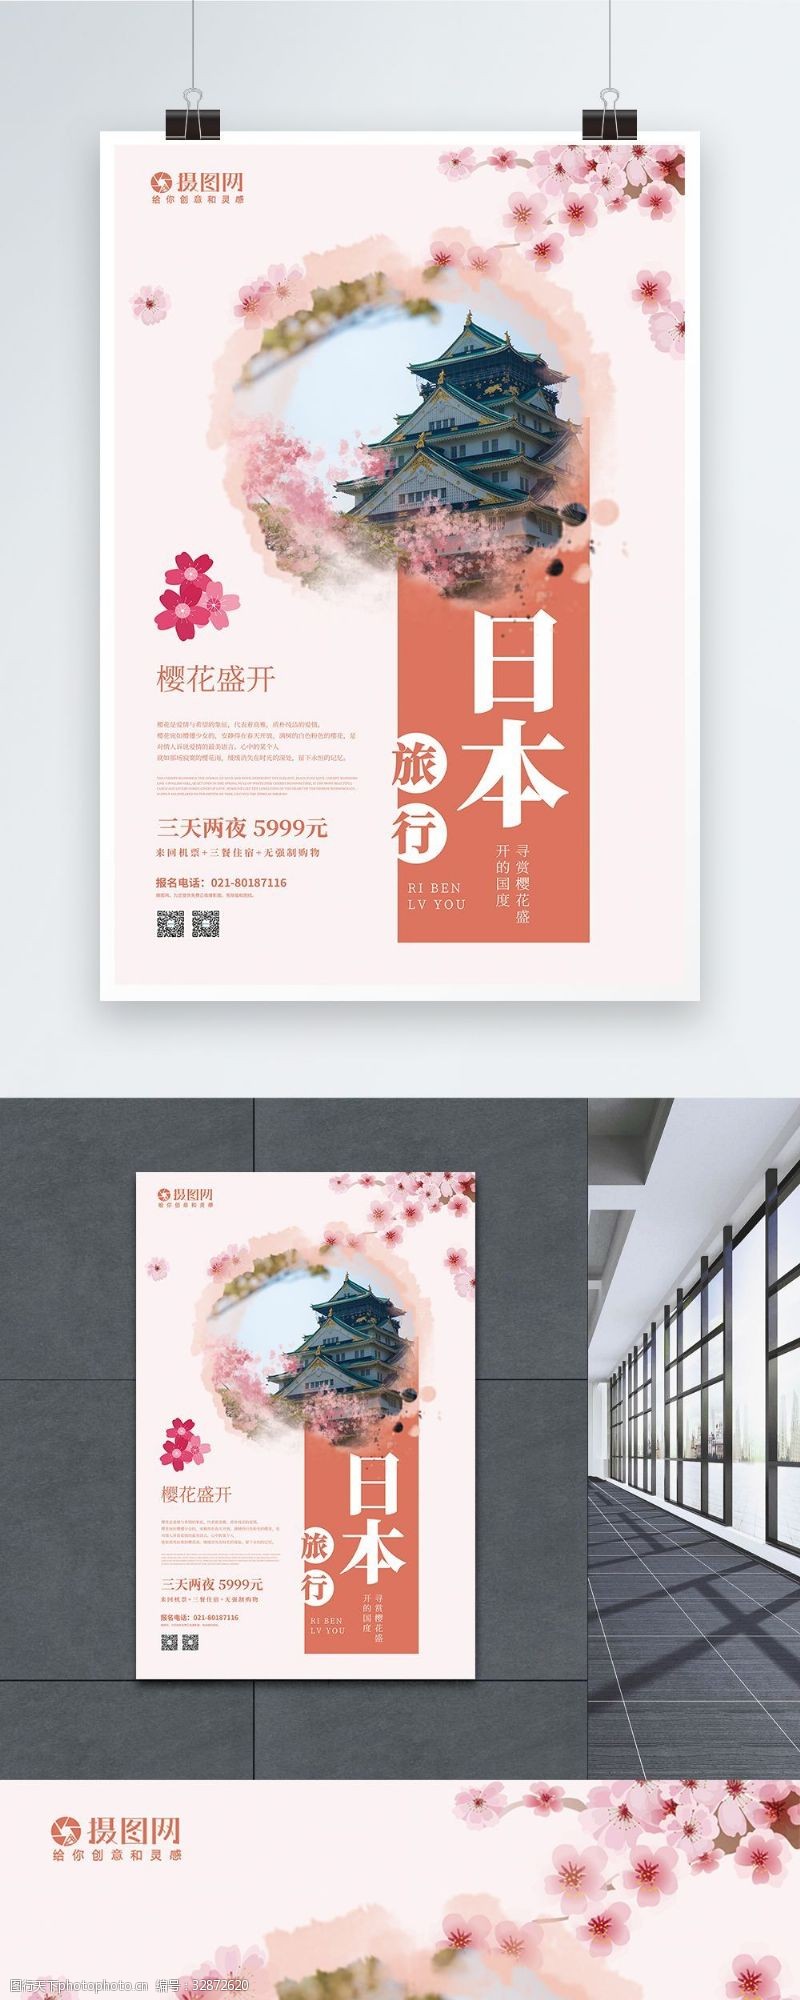 日本春季旅行踏青宣传海报